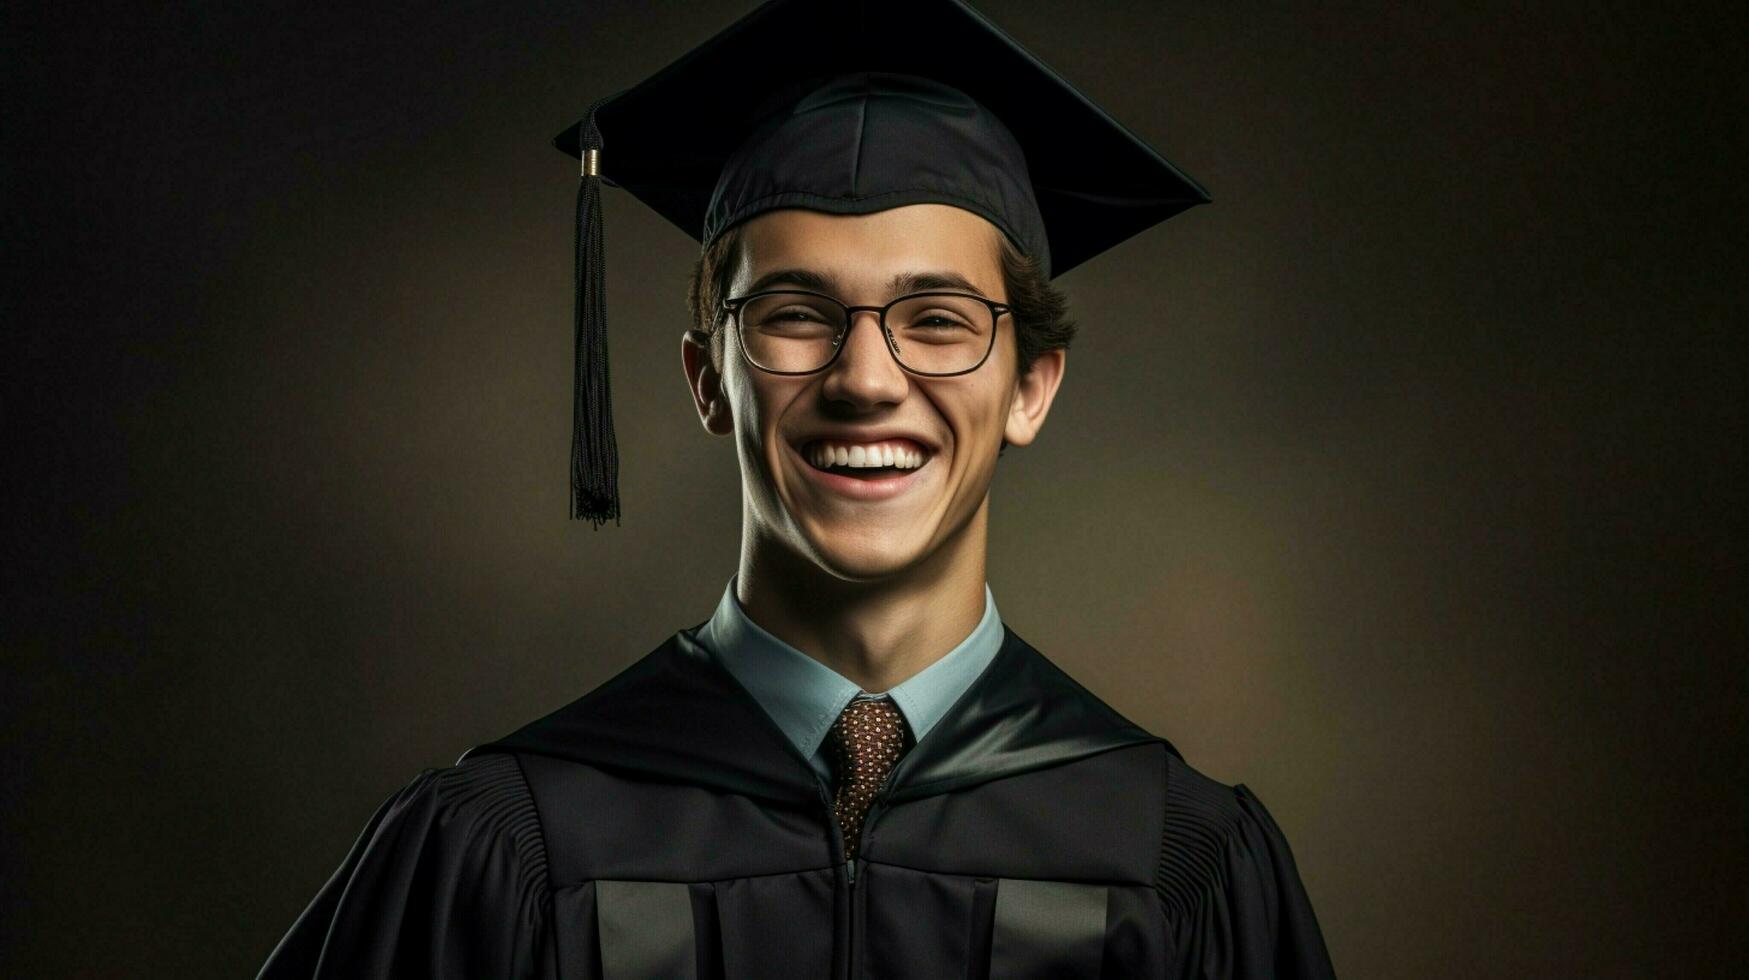 jovem adulto realização graduação vestido cheio de dentes sorrir foto